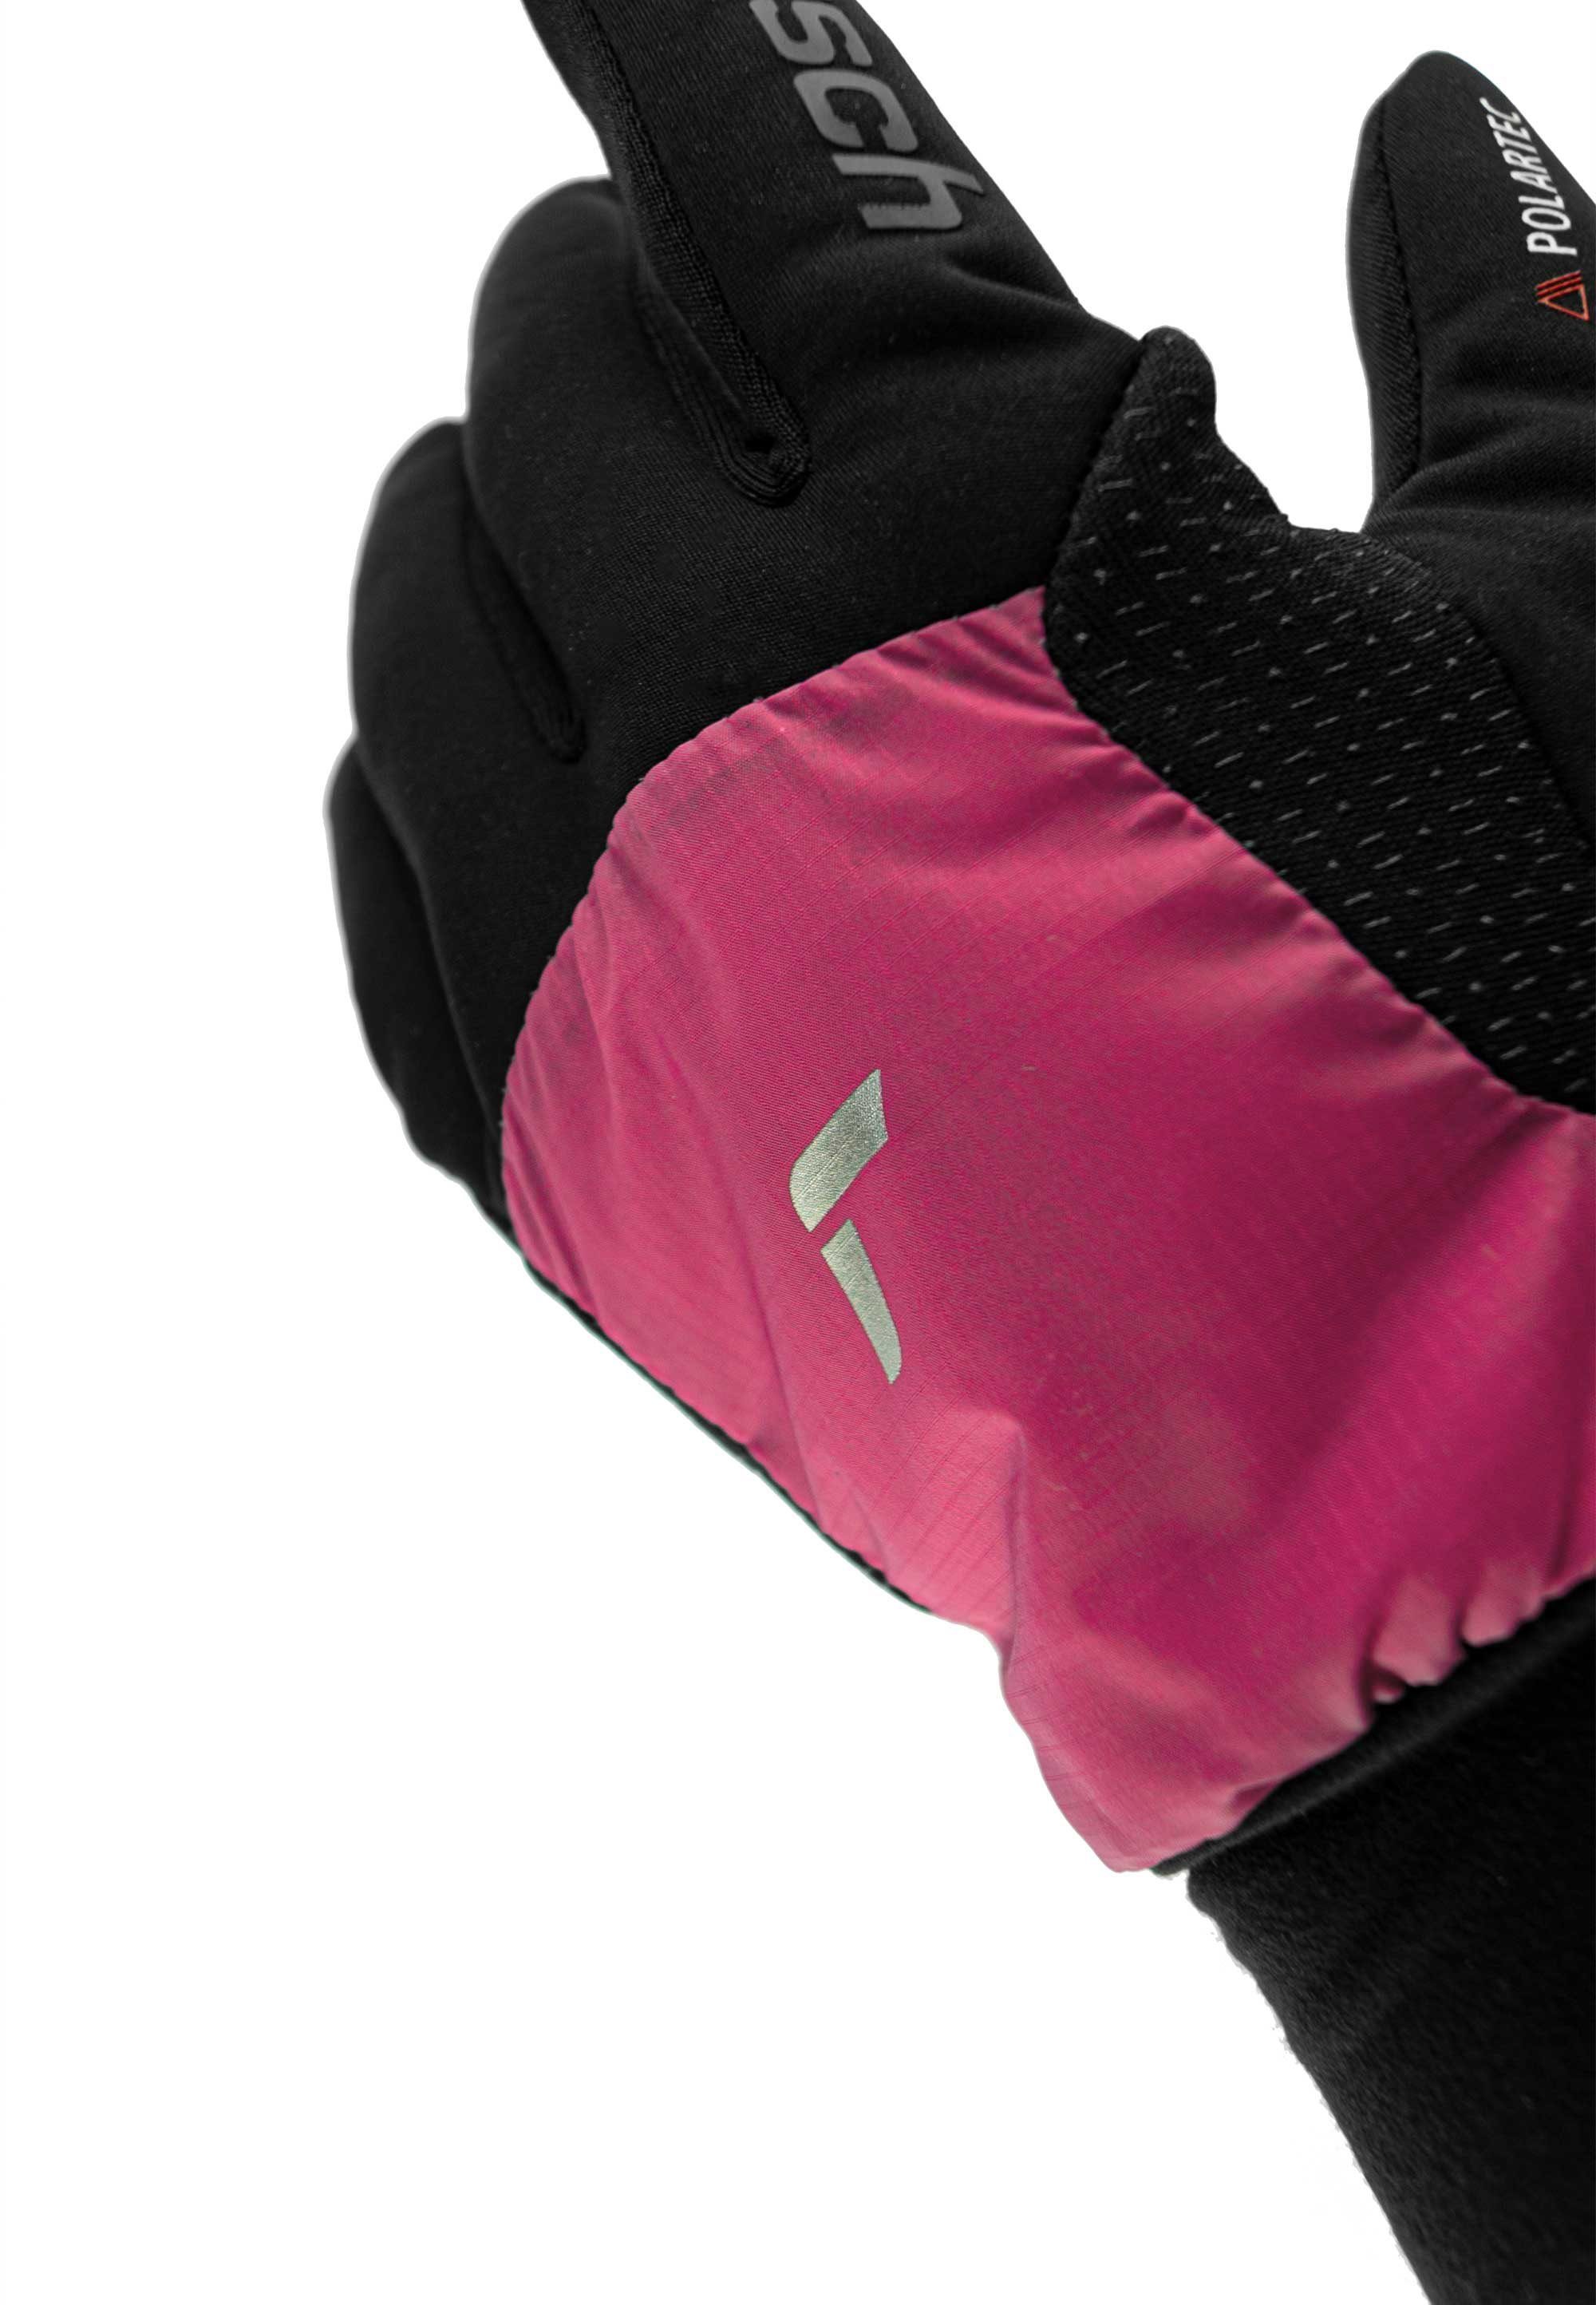 Skihandschuhe Garhwal Reusch mit schwarz-pink praktischer Touchscreen-Funktion Hybrid